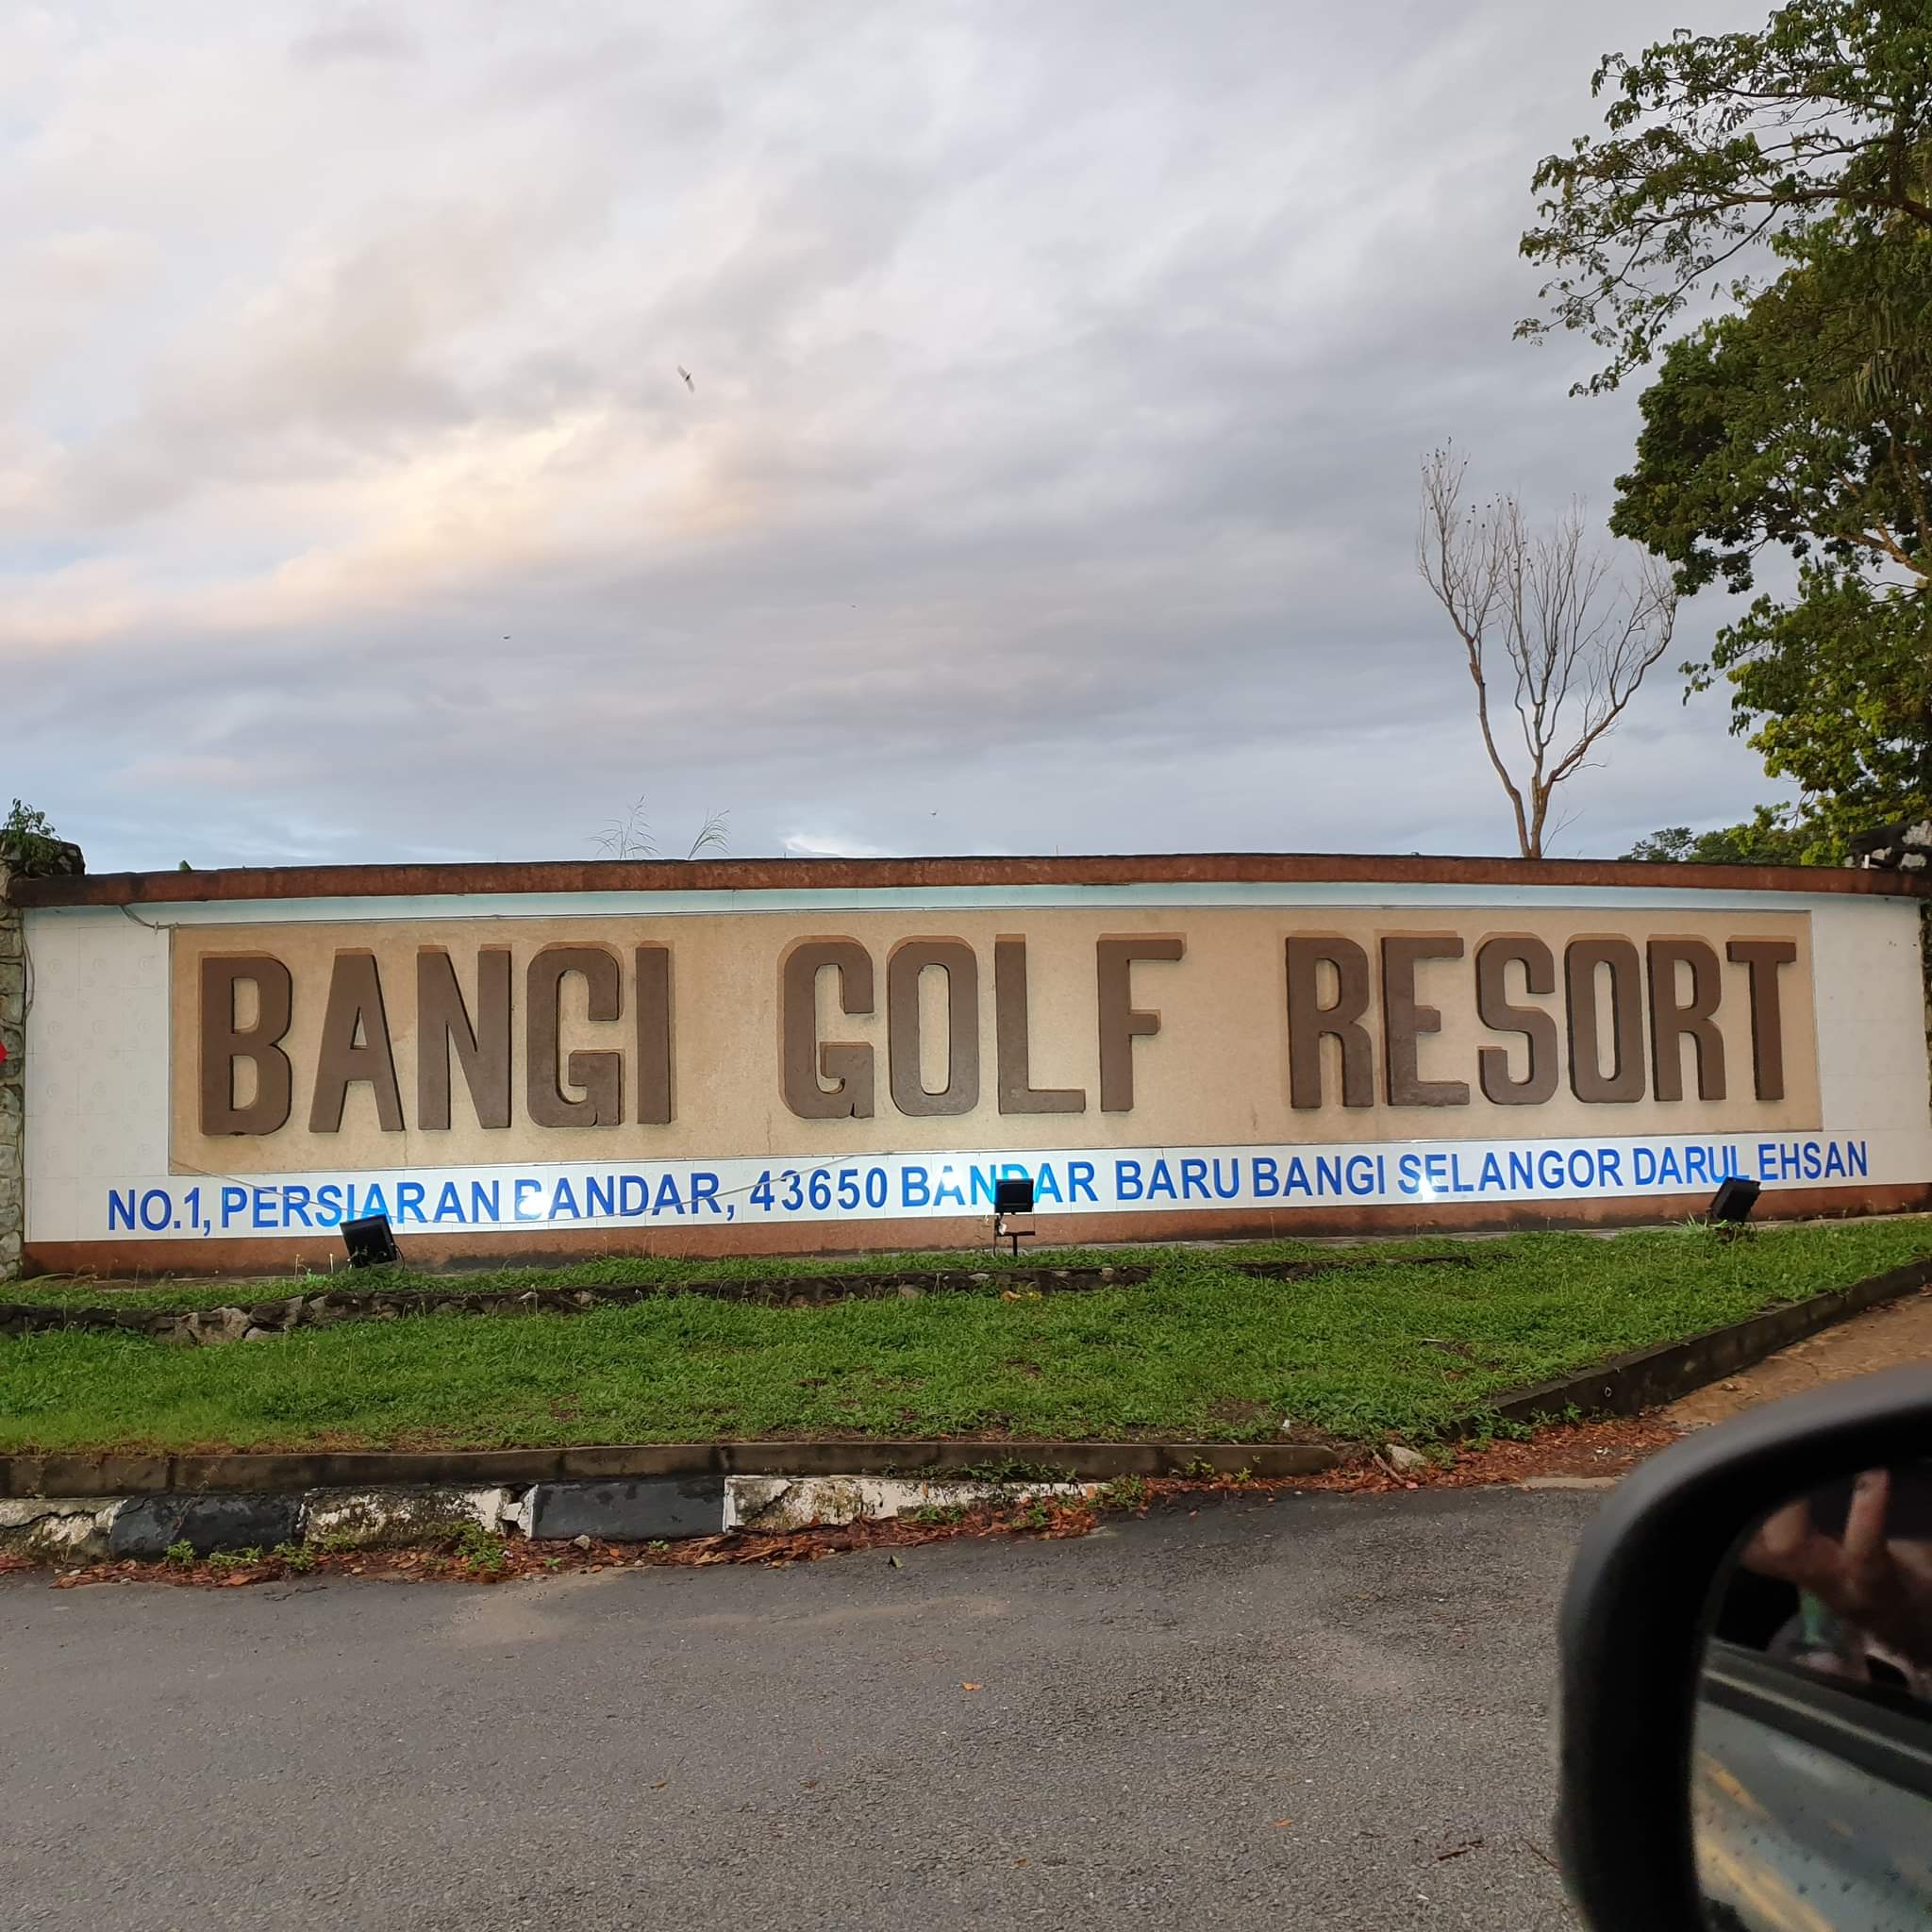 Bangi golf resort iftar 2021